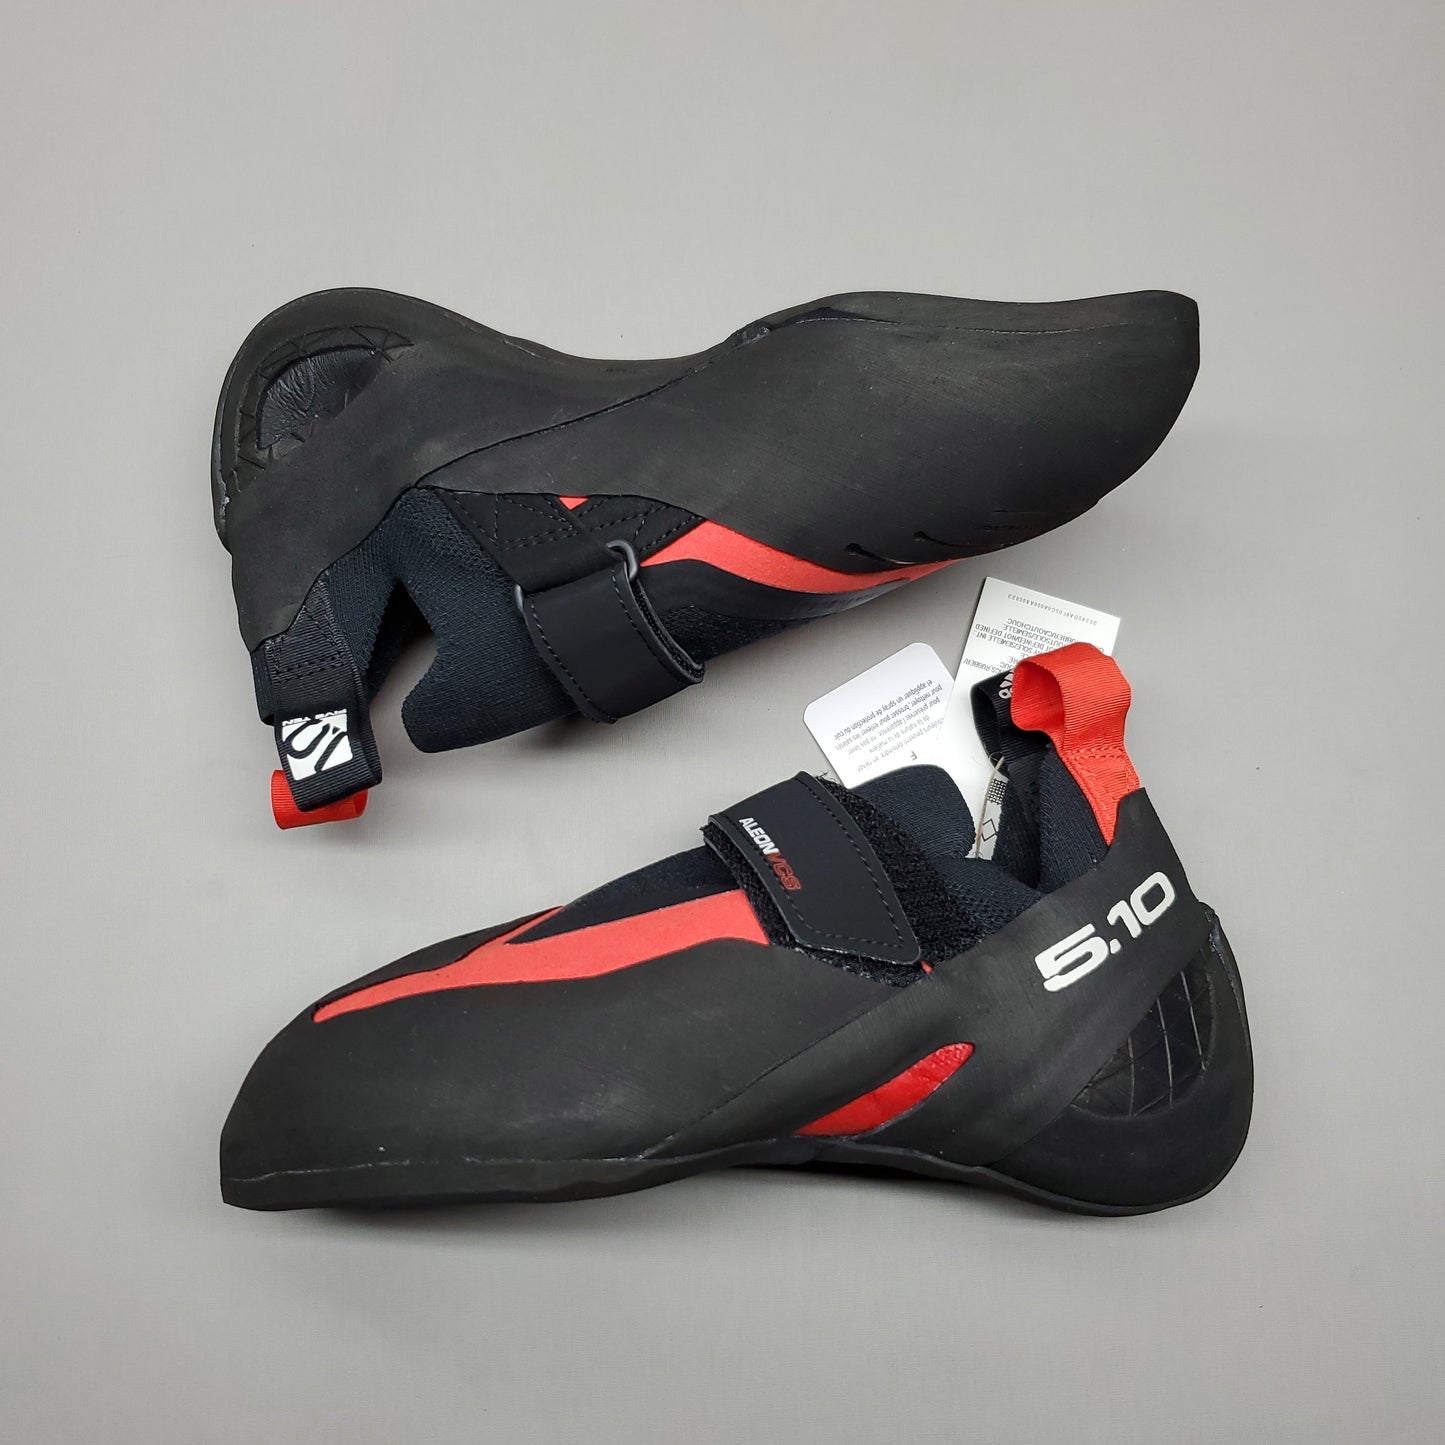 ADIDAS Five Ten Aleon Hook & Loop Climbing Shoes Men's Sz 7 Black/Red BC0861 (New)